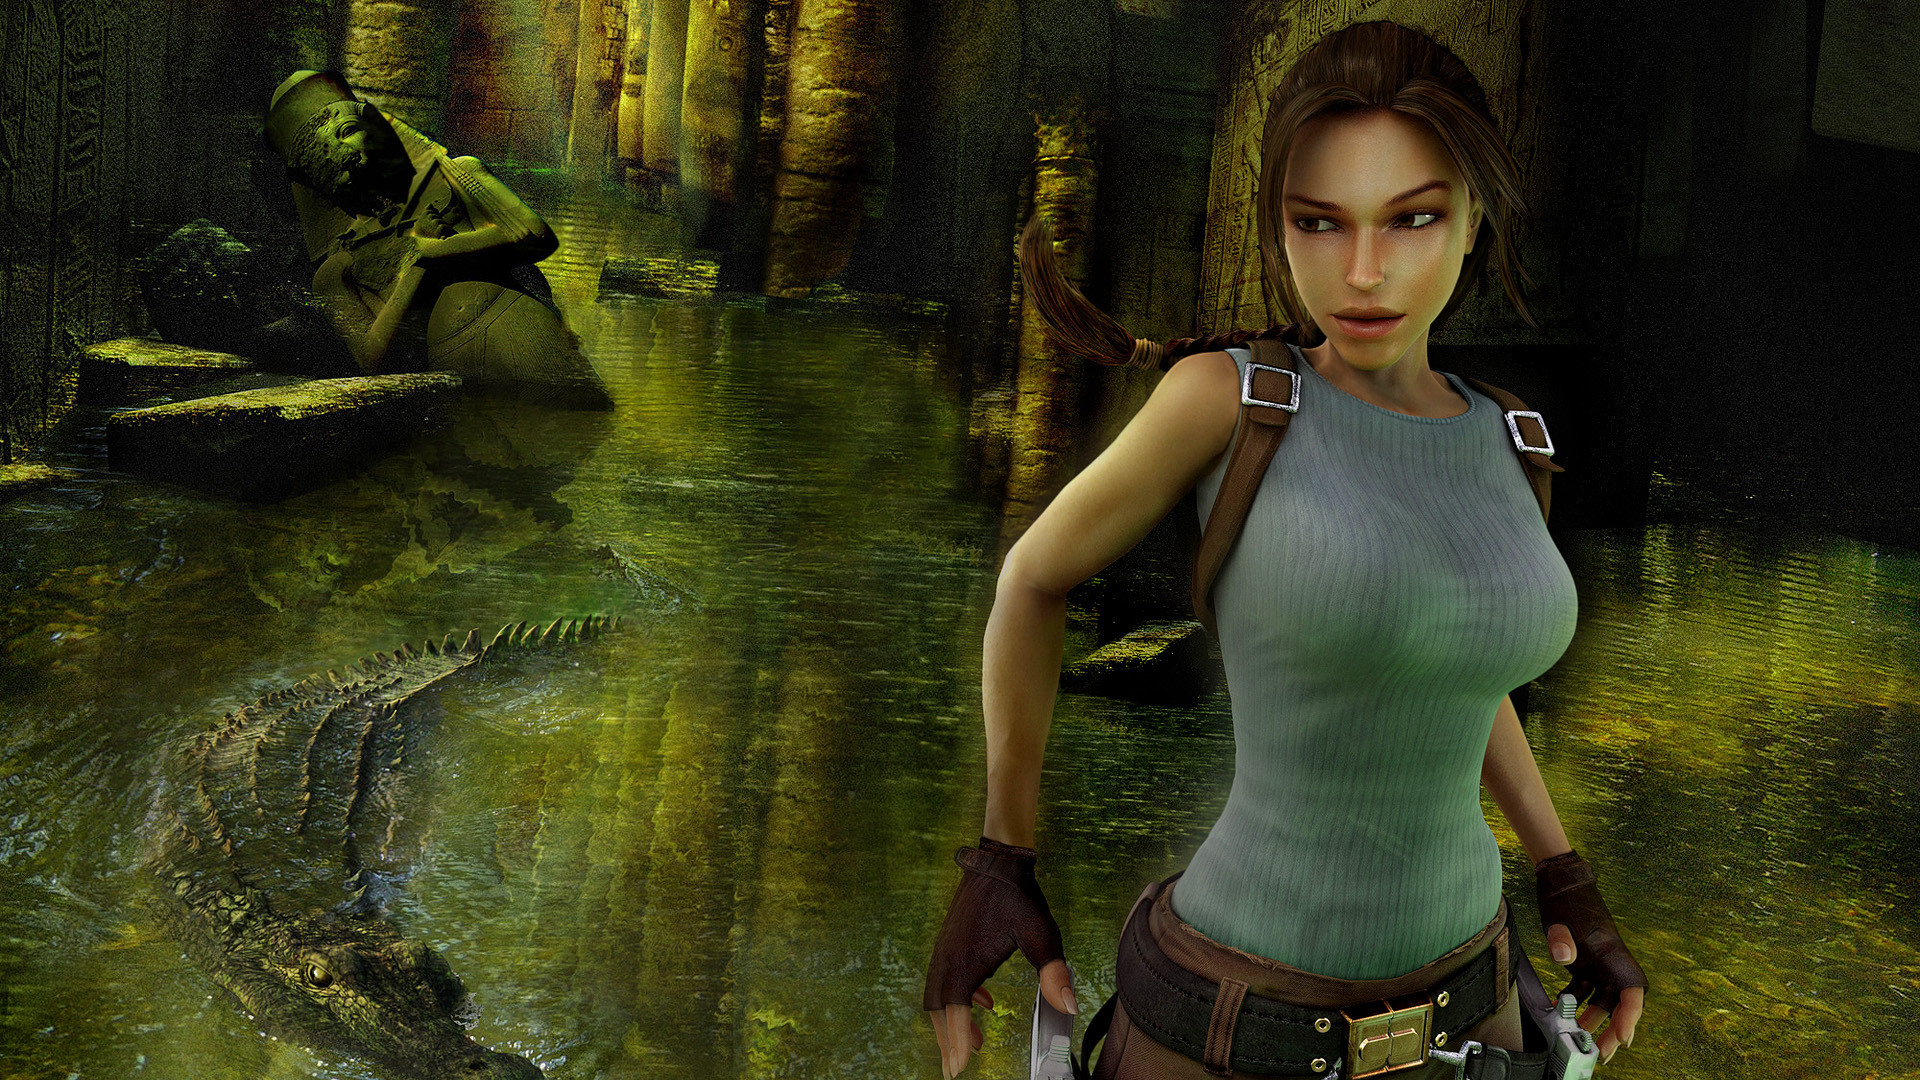 Descargar fondos de escritorio de Tomb Raider: Anniversary HD